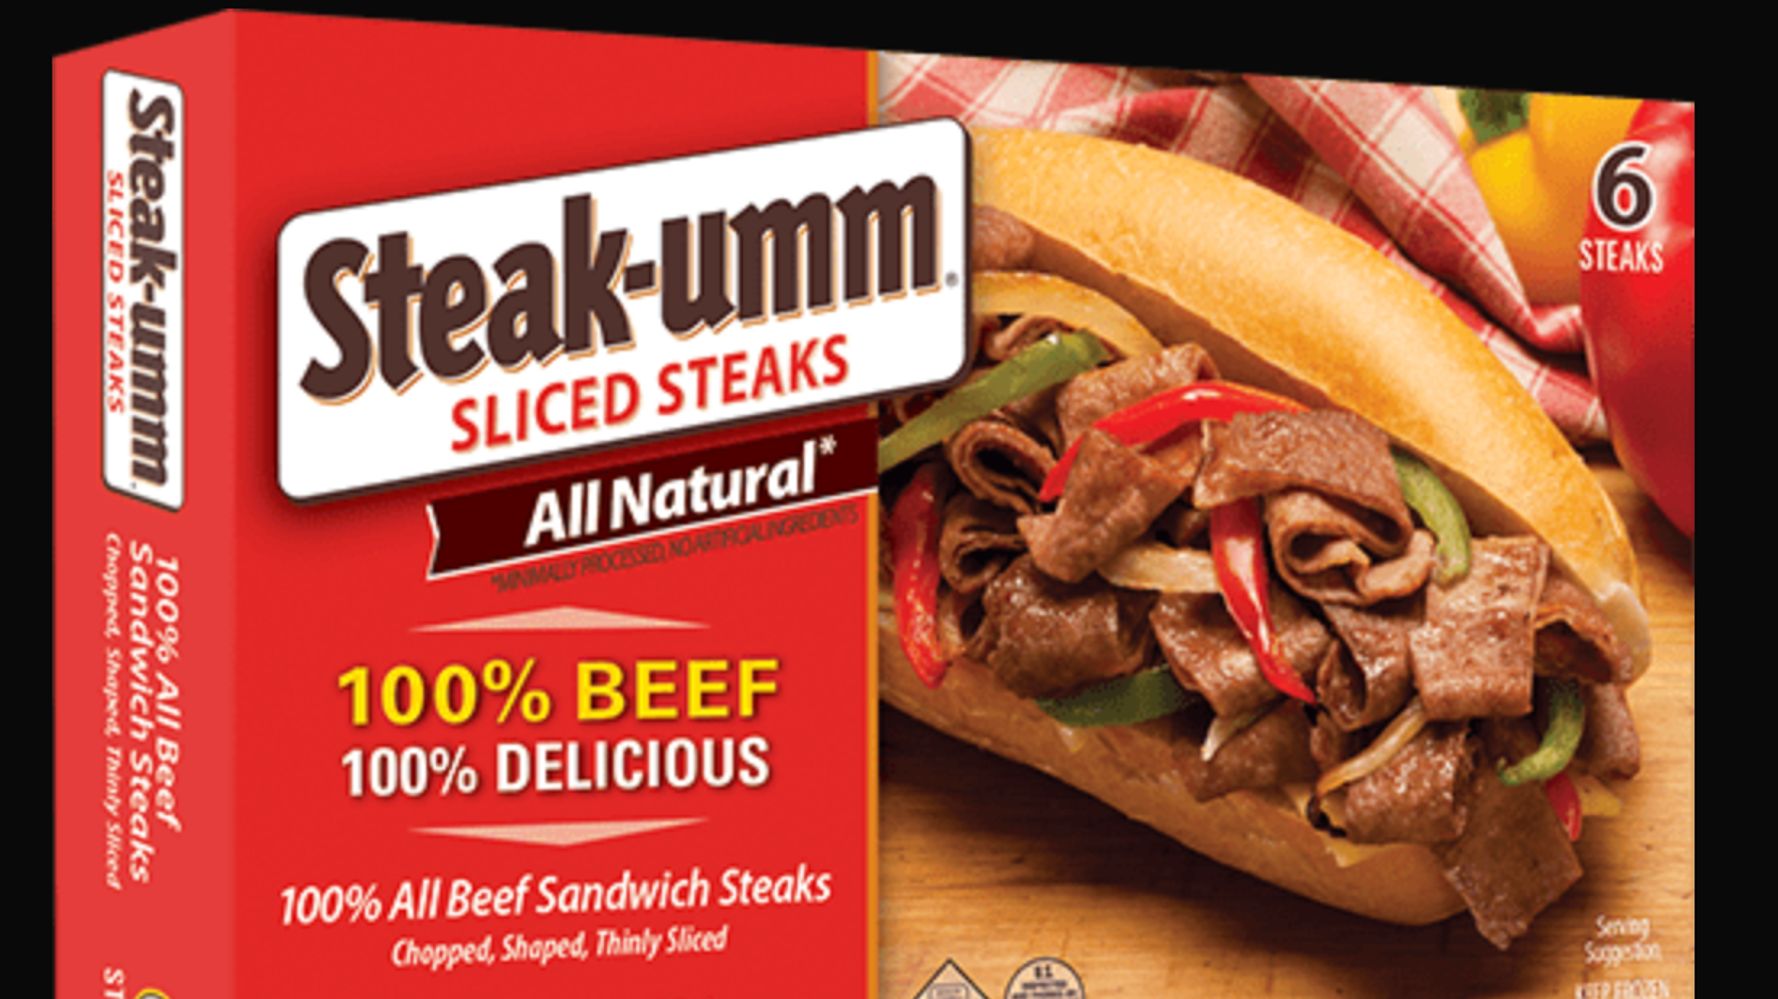 Steak-umm Starts Beef With Disinformation In Twitter Thread